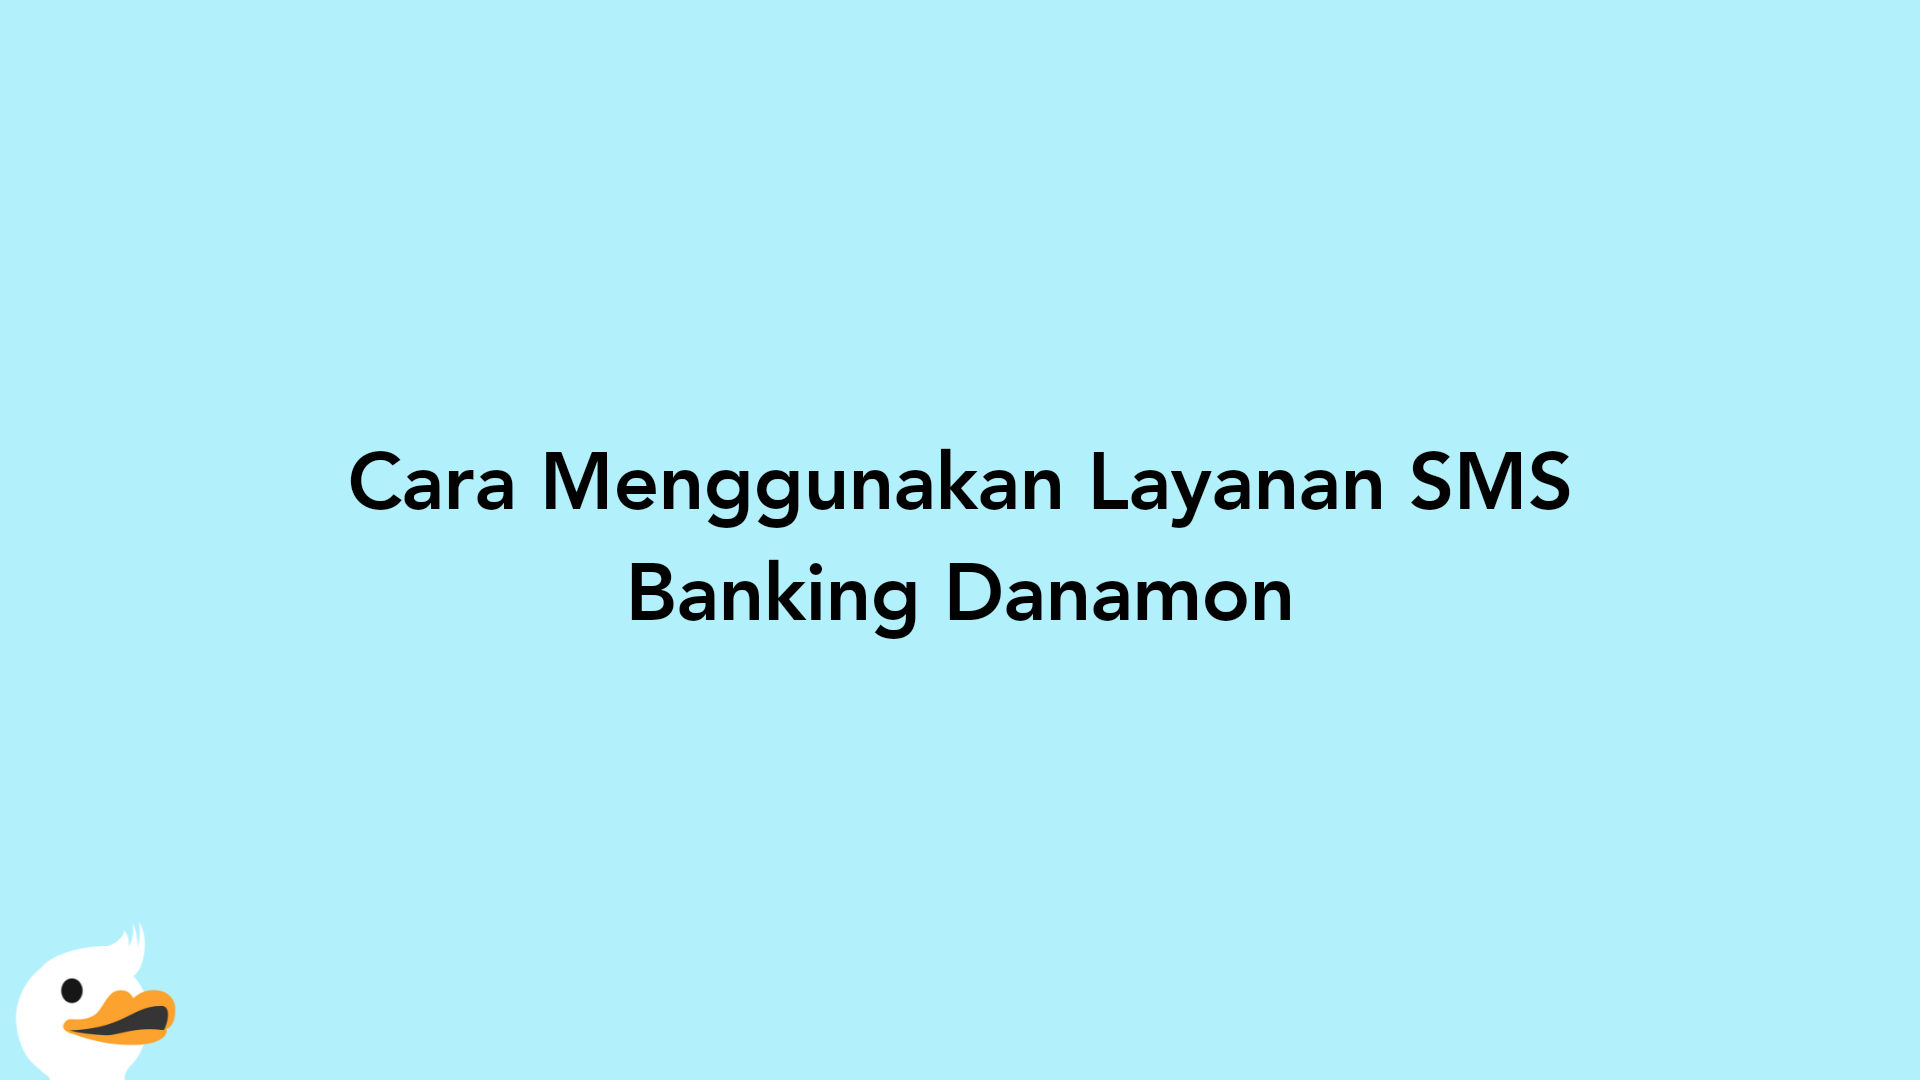 Cara Menggunakan Layanan SMS Banking Danamon